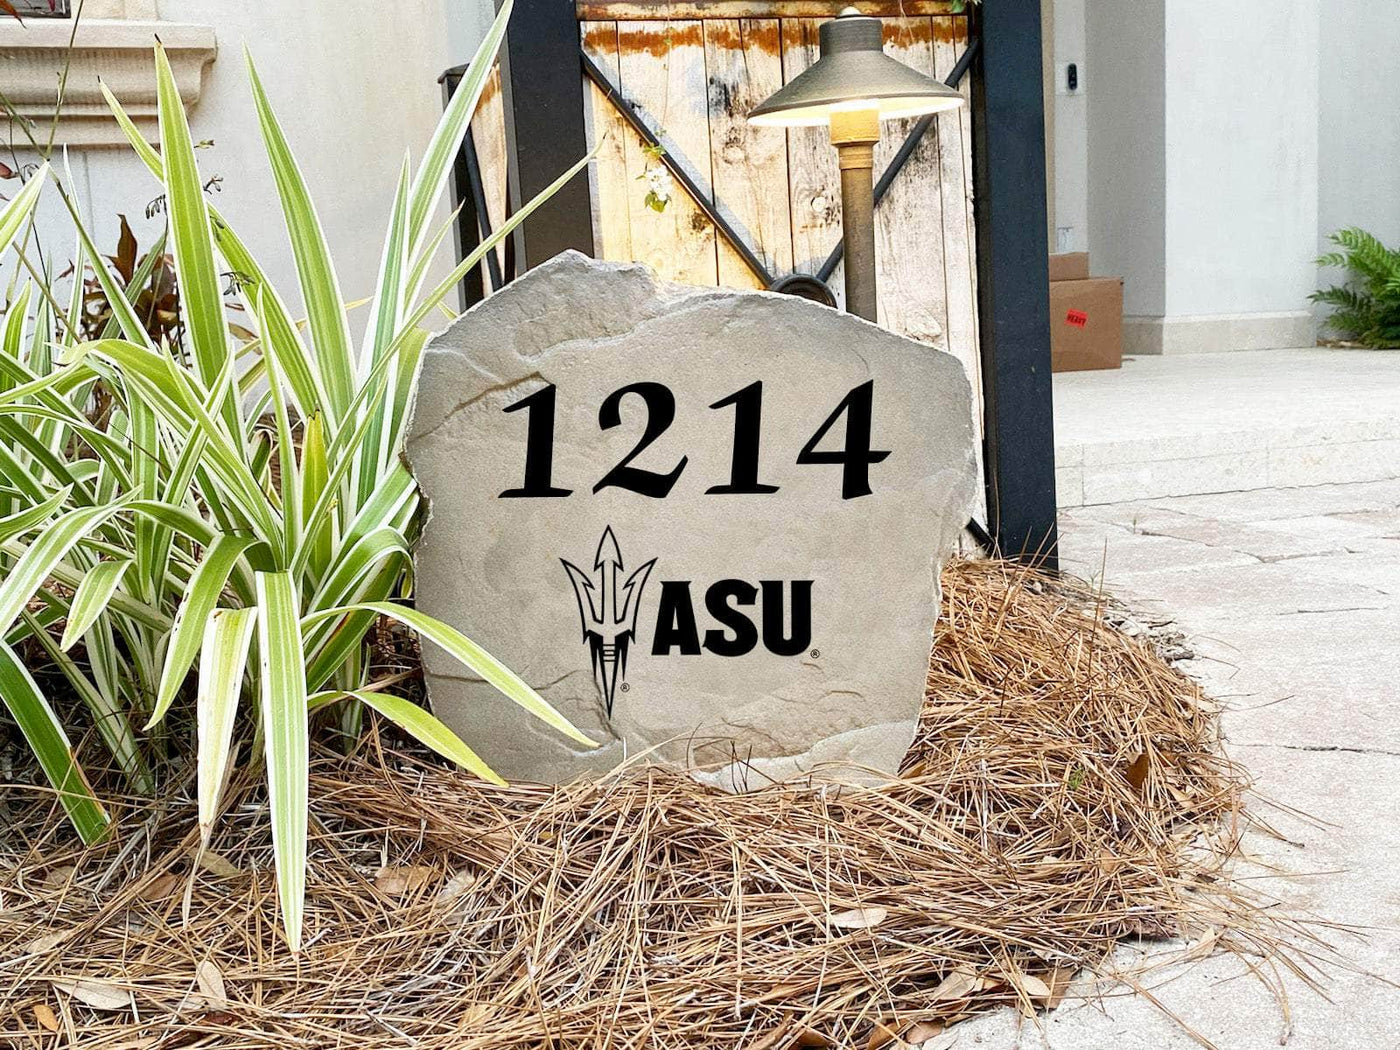 Arizona State University Address Stone